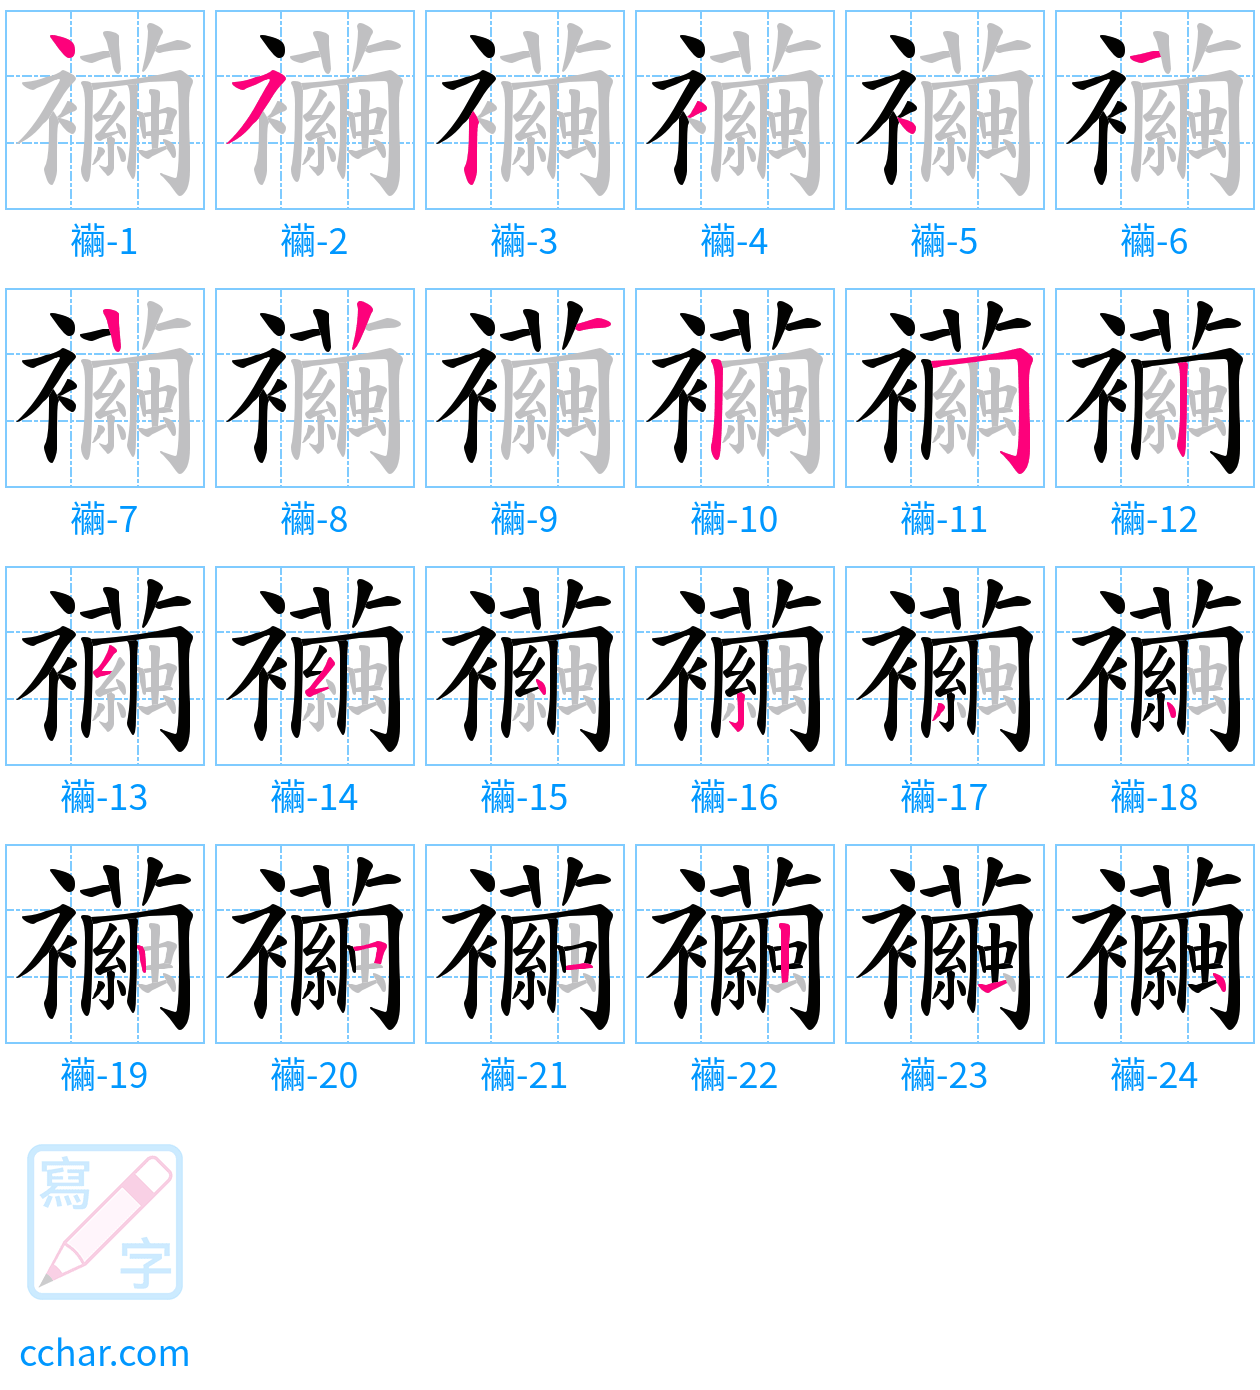 襺 stroke order step-by-step diagram